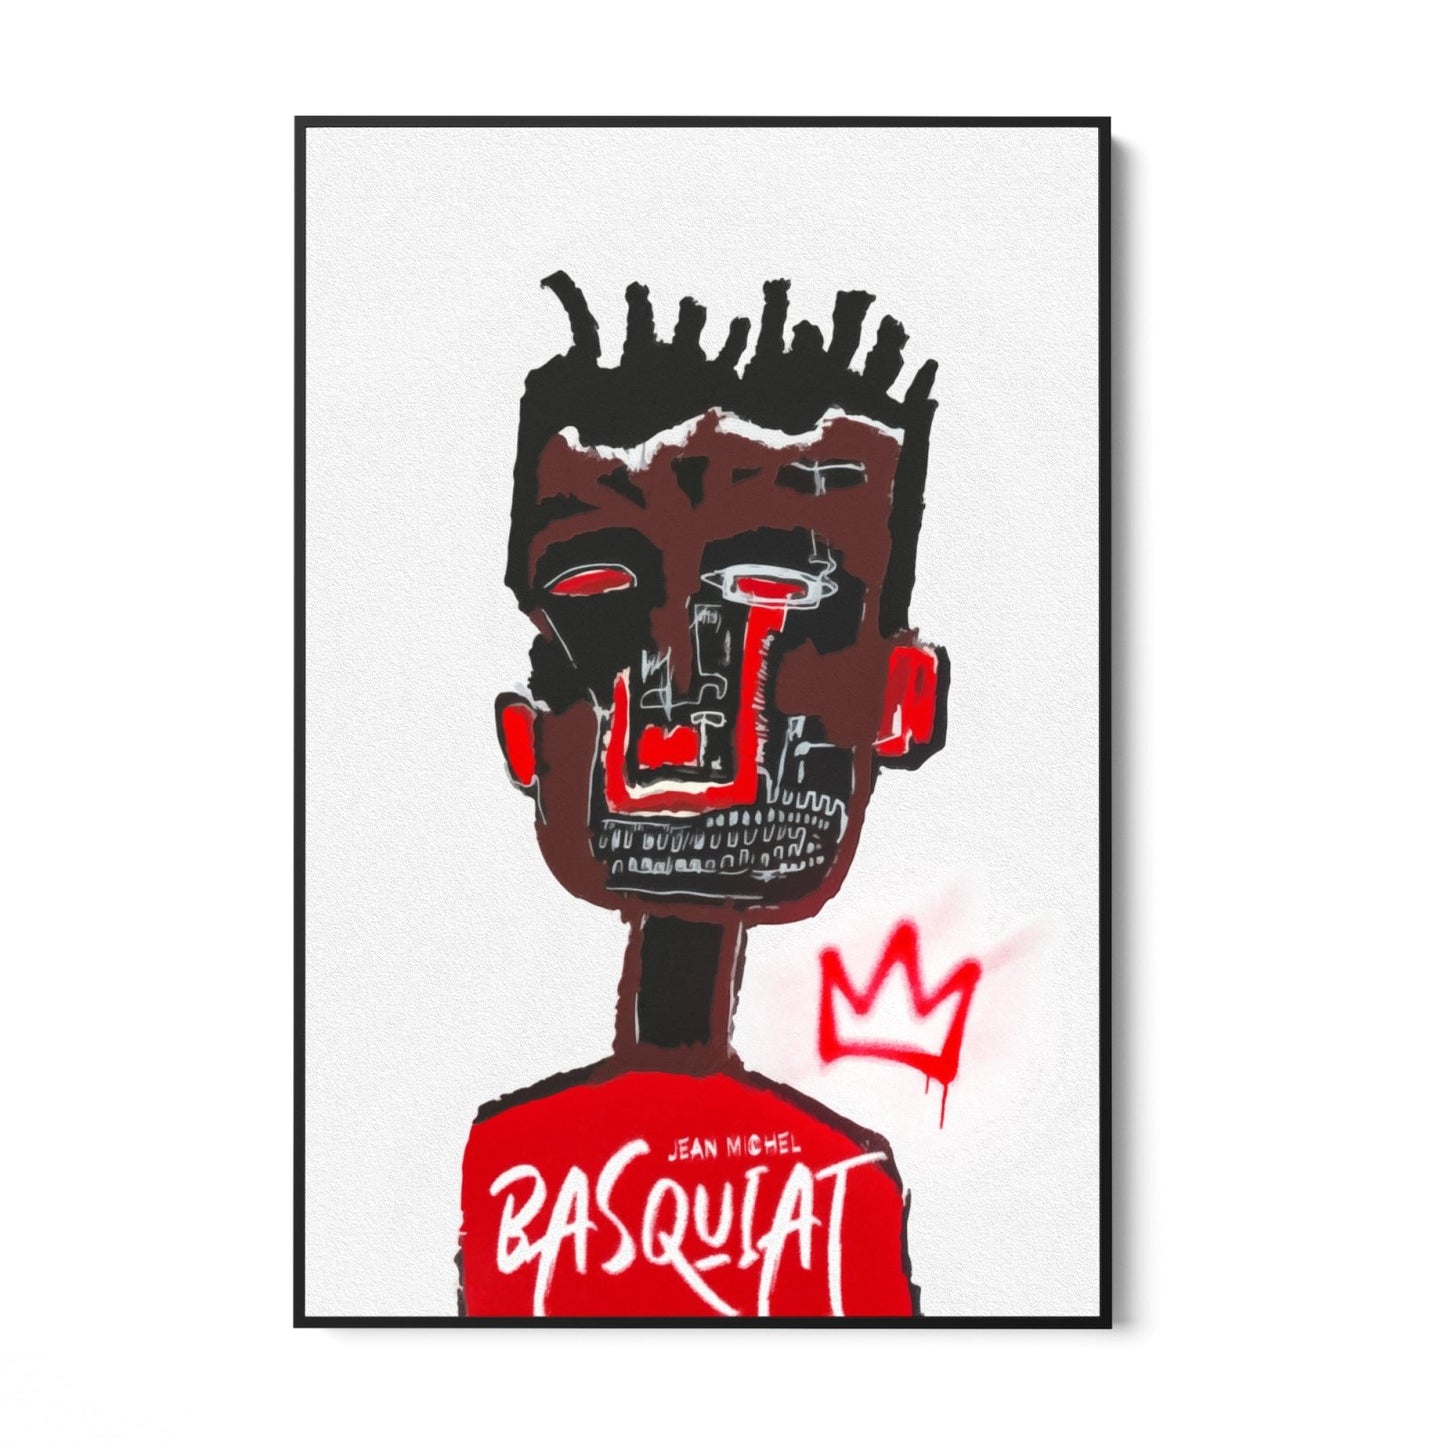 Σκίτσο Basquiat